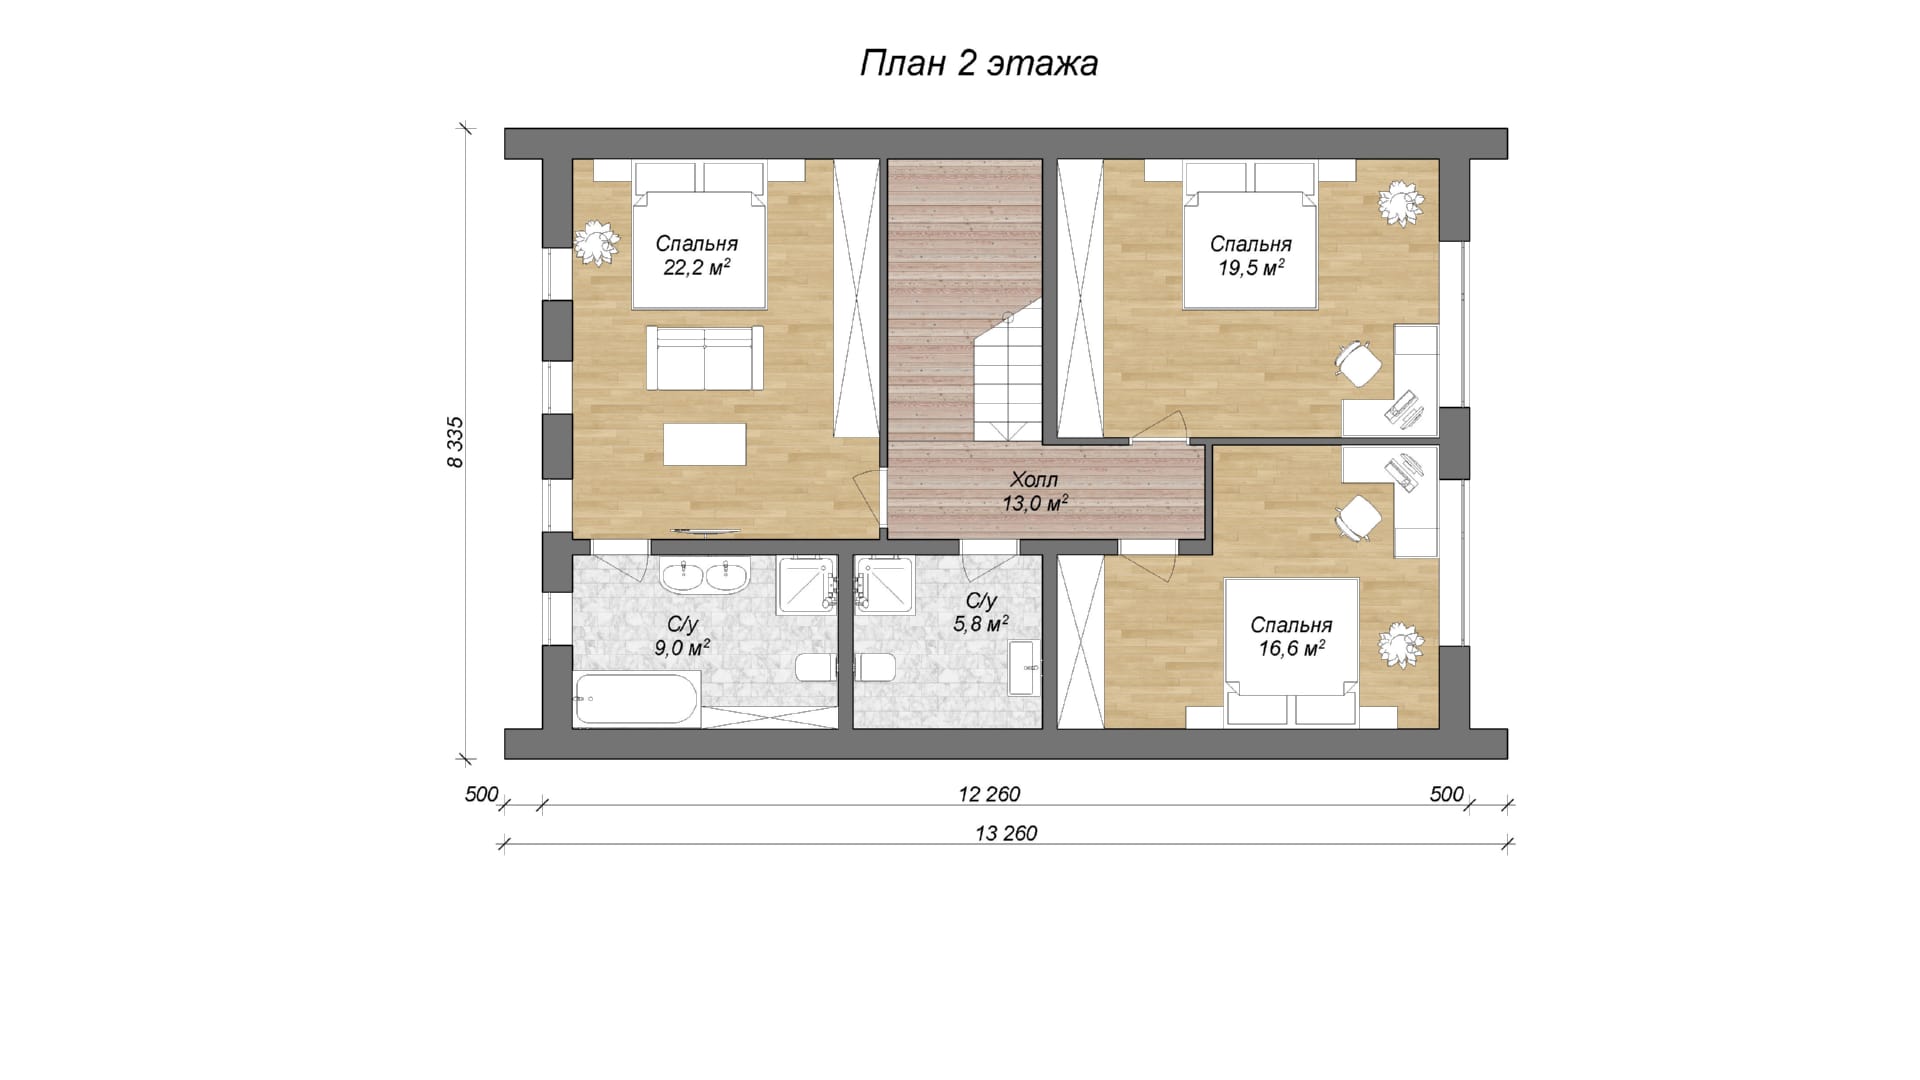 планировка 2 этажа двухэтажного дома барнхаус